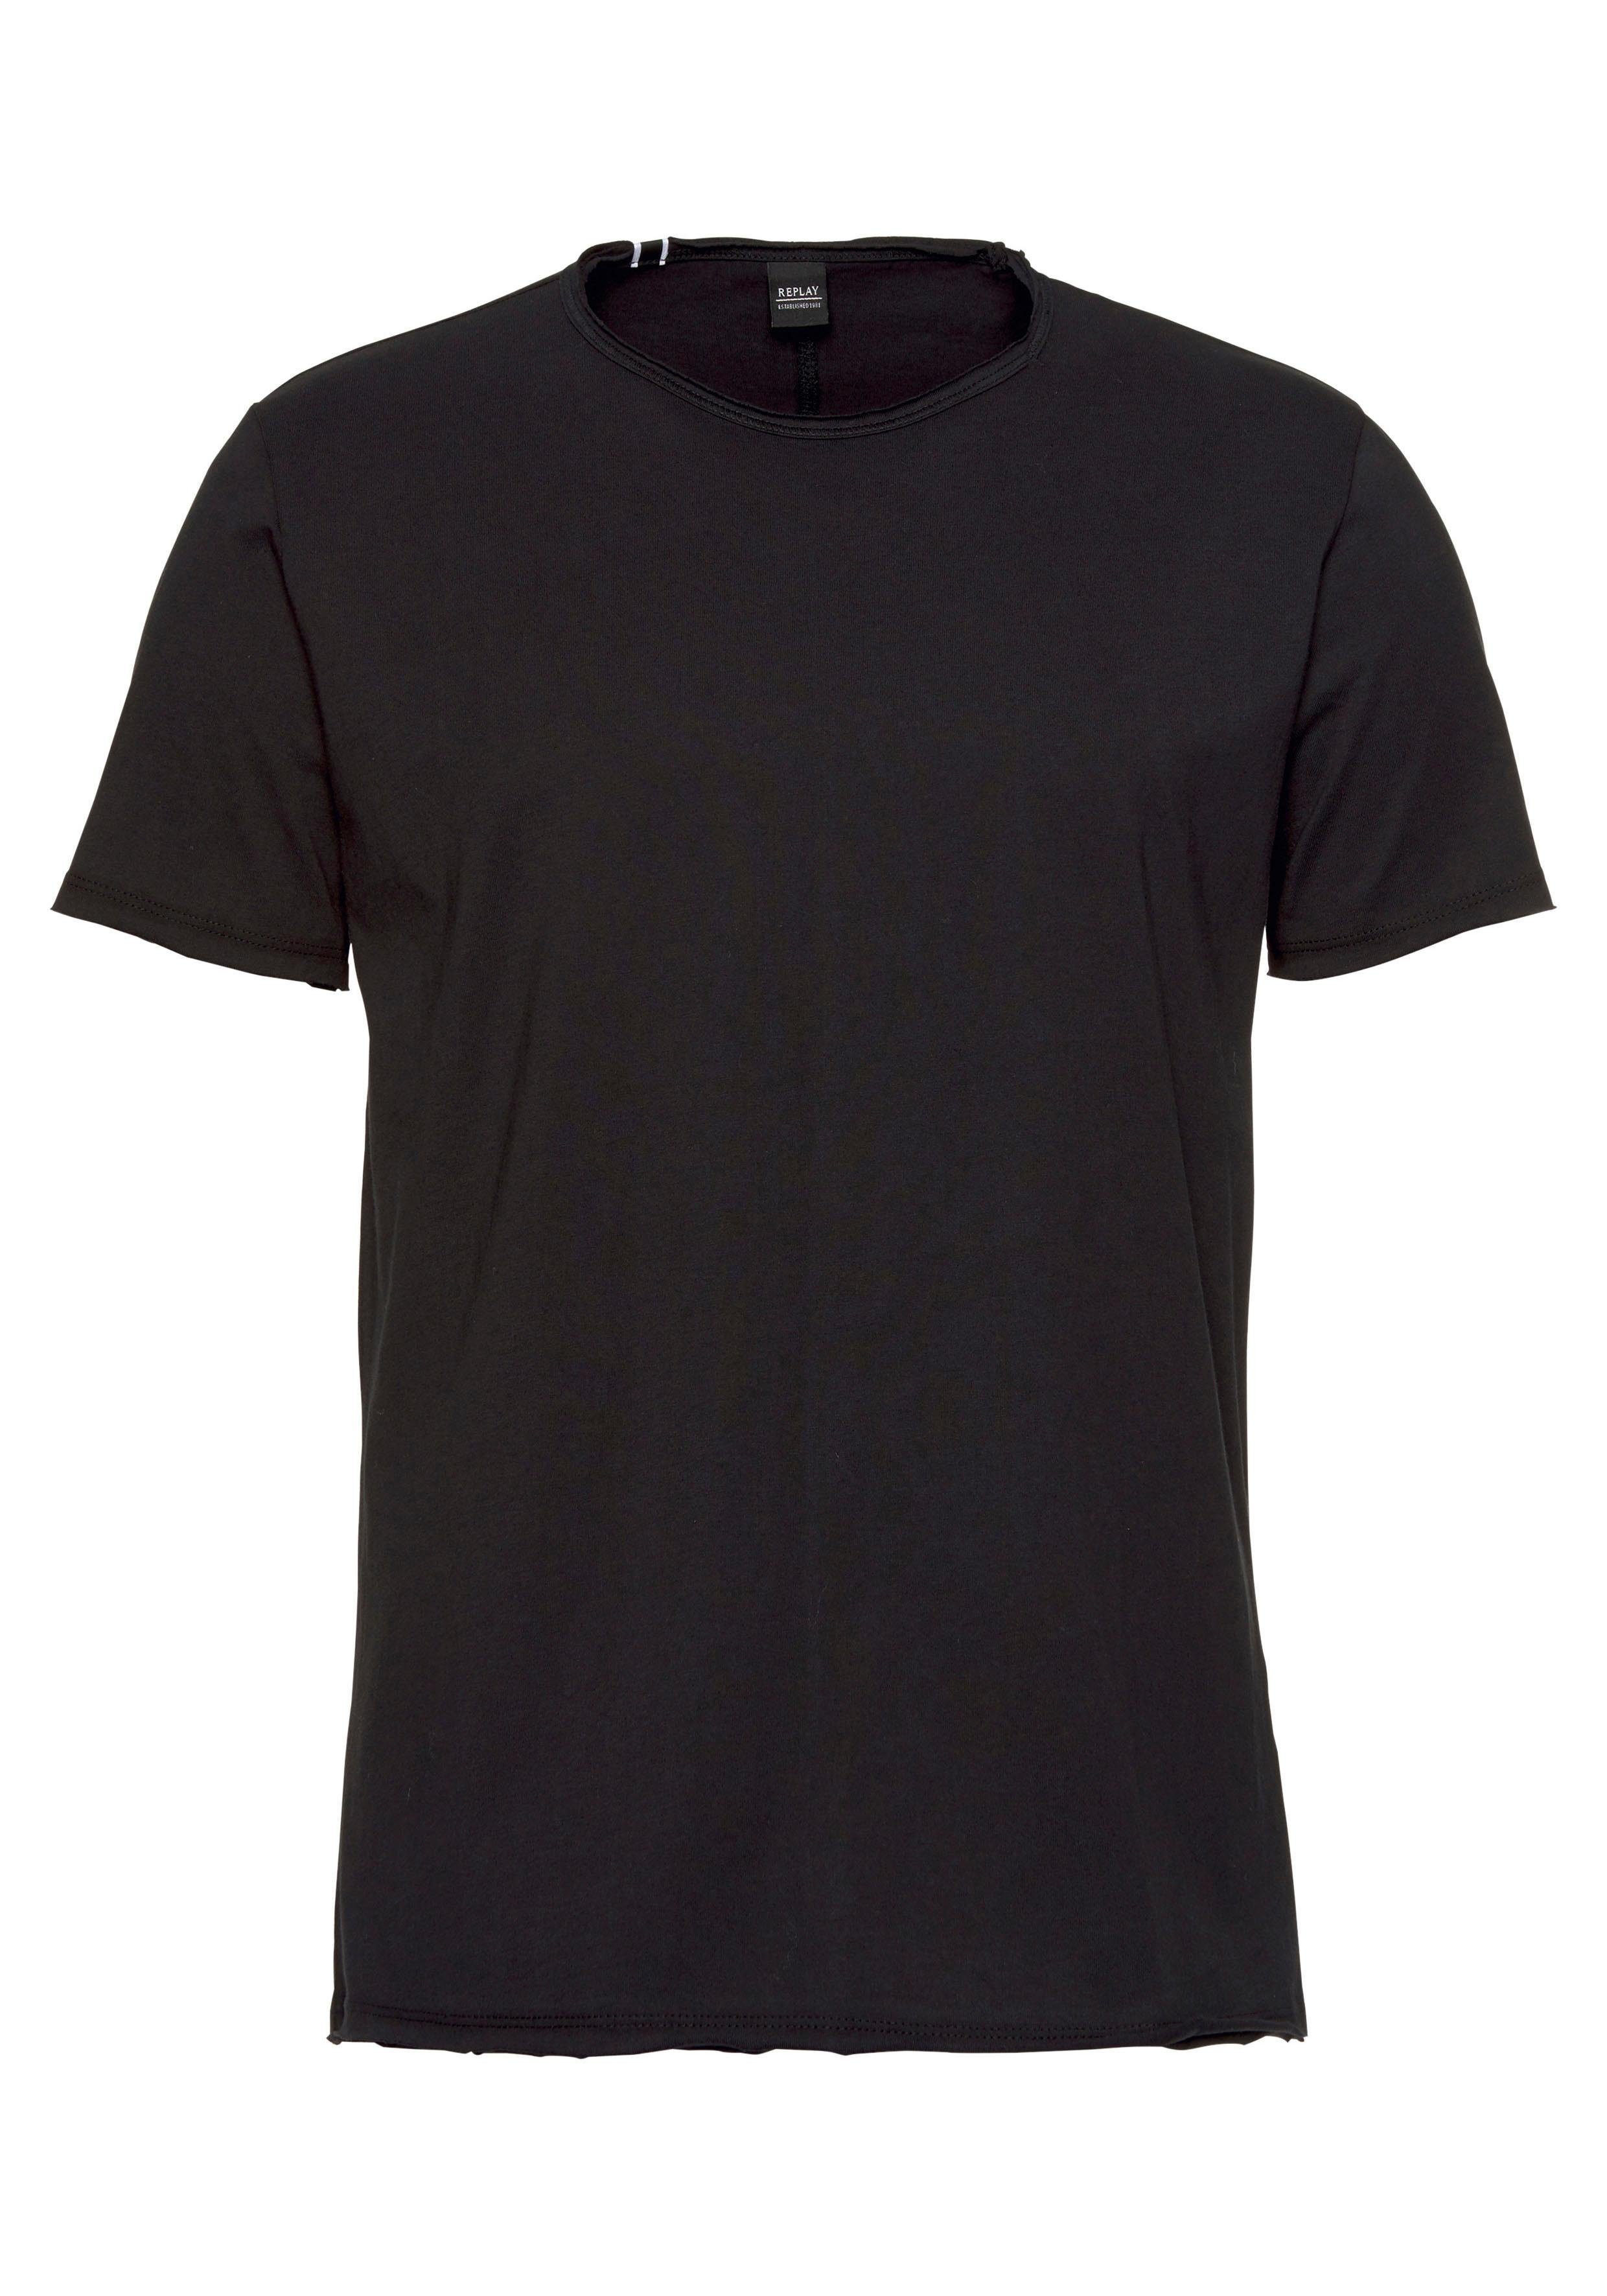 T-Shirt Replay schwarz offene Kanten